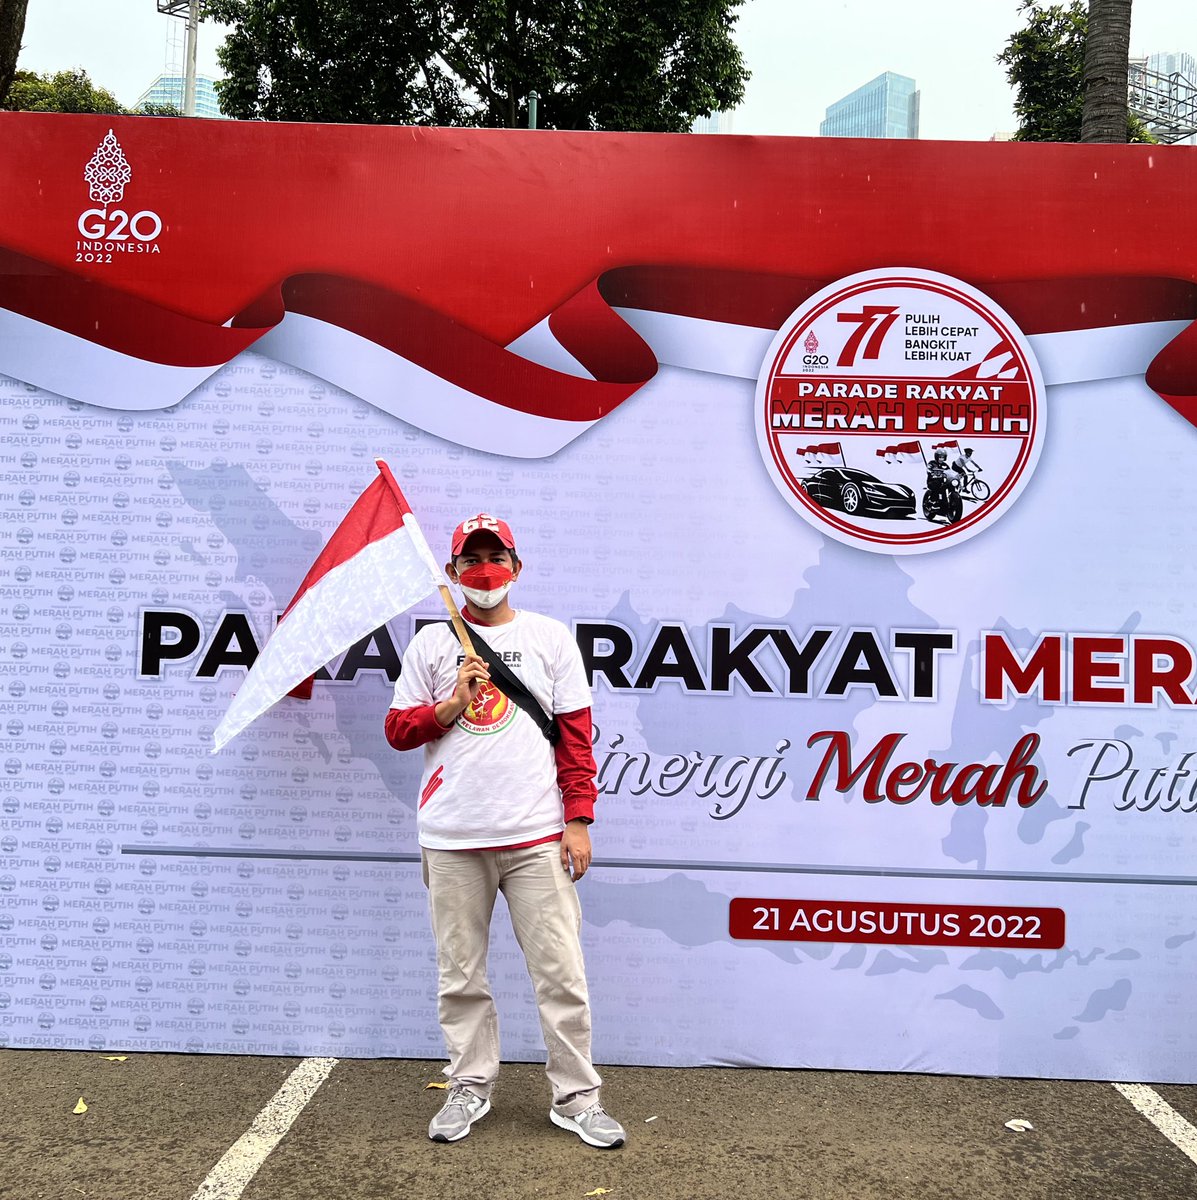 Parade Rakyat Merah Putih
21 Agustus 2022
GBK - Jakarta

#gbk #merahputih #hutri77 #abubakar